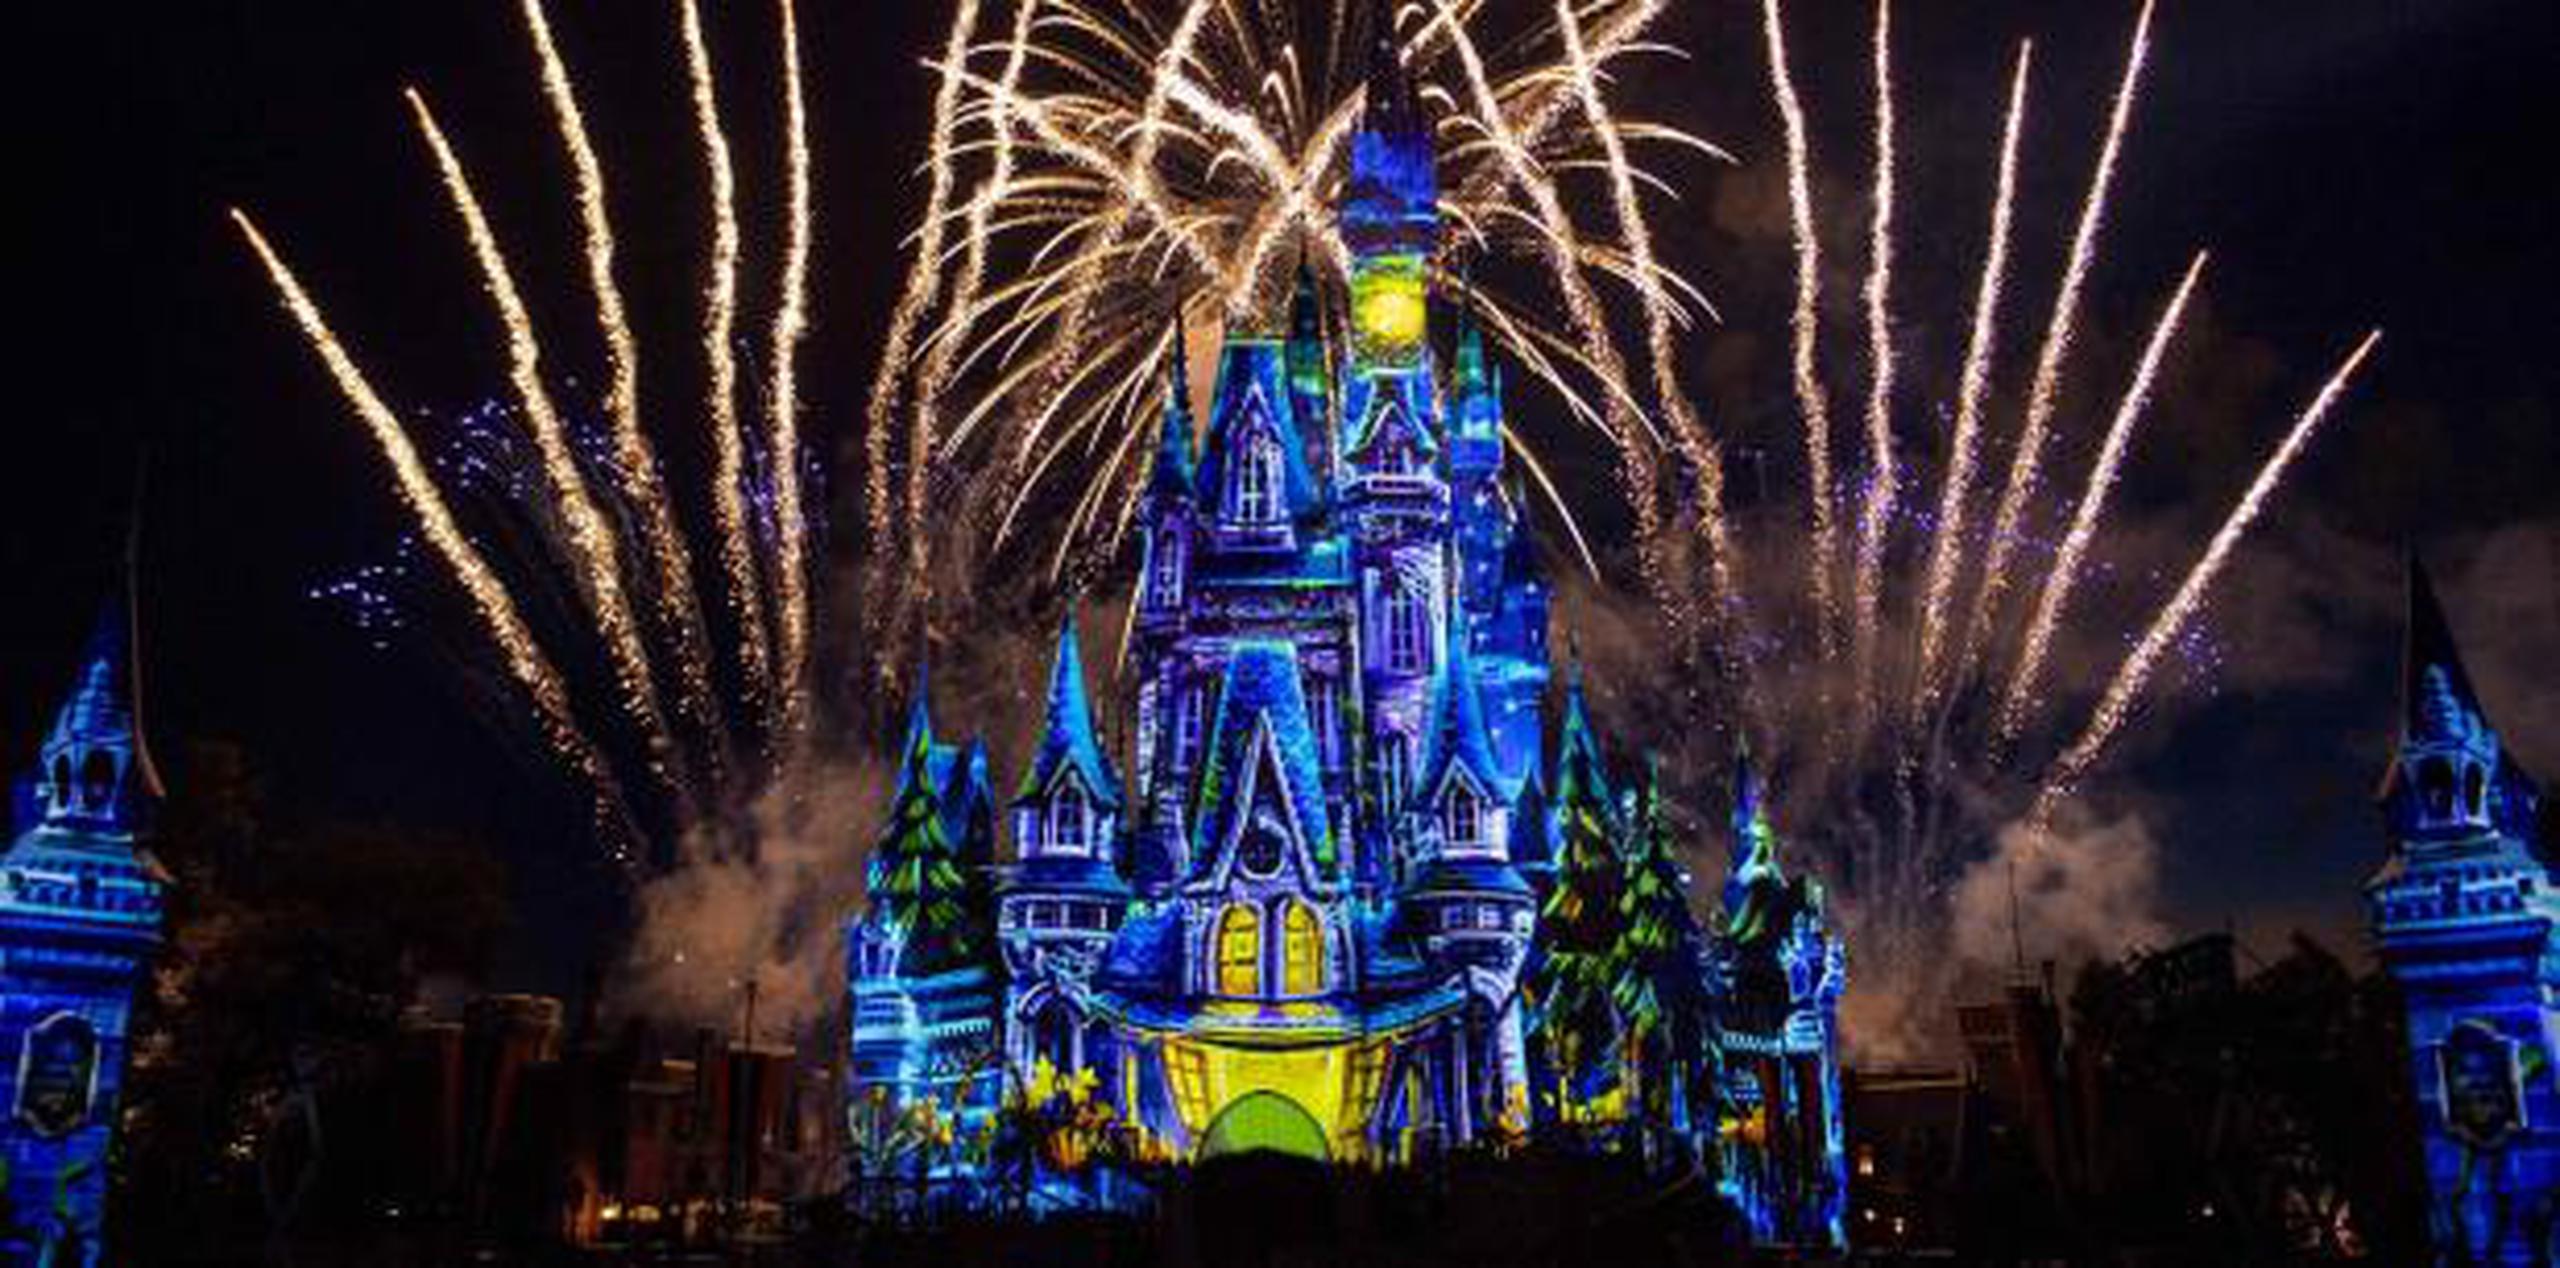 El espectáculo de fuegos artificiales “Disney’s Not-So-Spooky Spectacular” se ofrece como parte de la celebración de Halloween. (Suministrada)